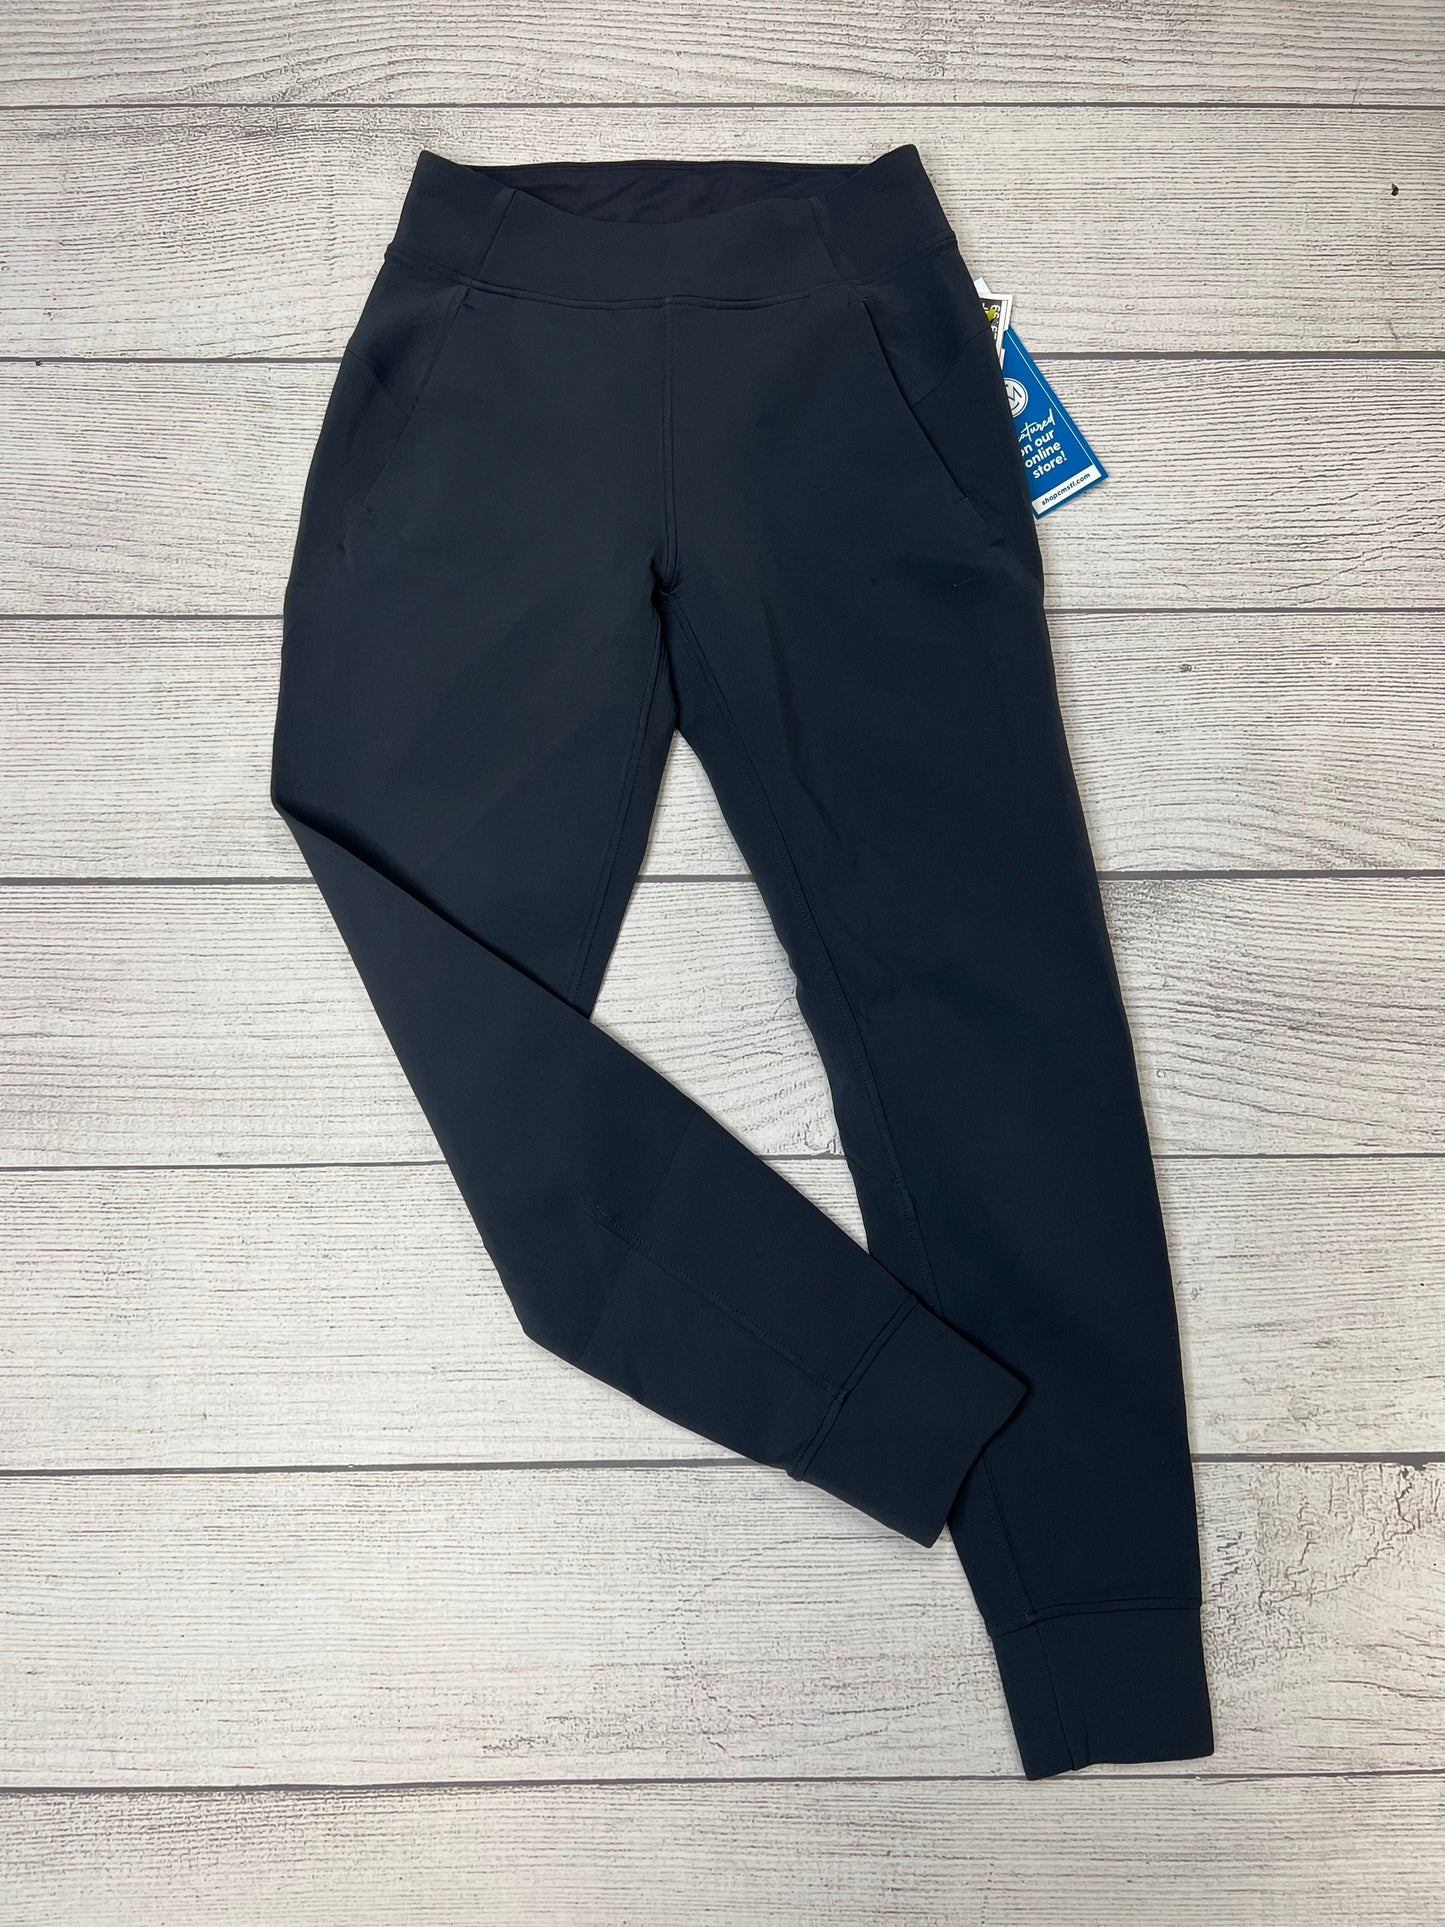 Grey Athletic Pants Lululemon, Size 4